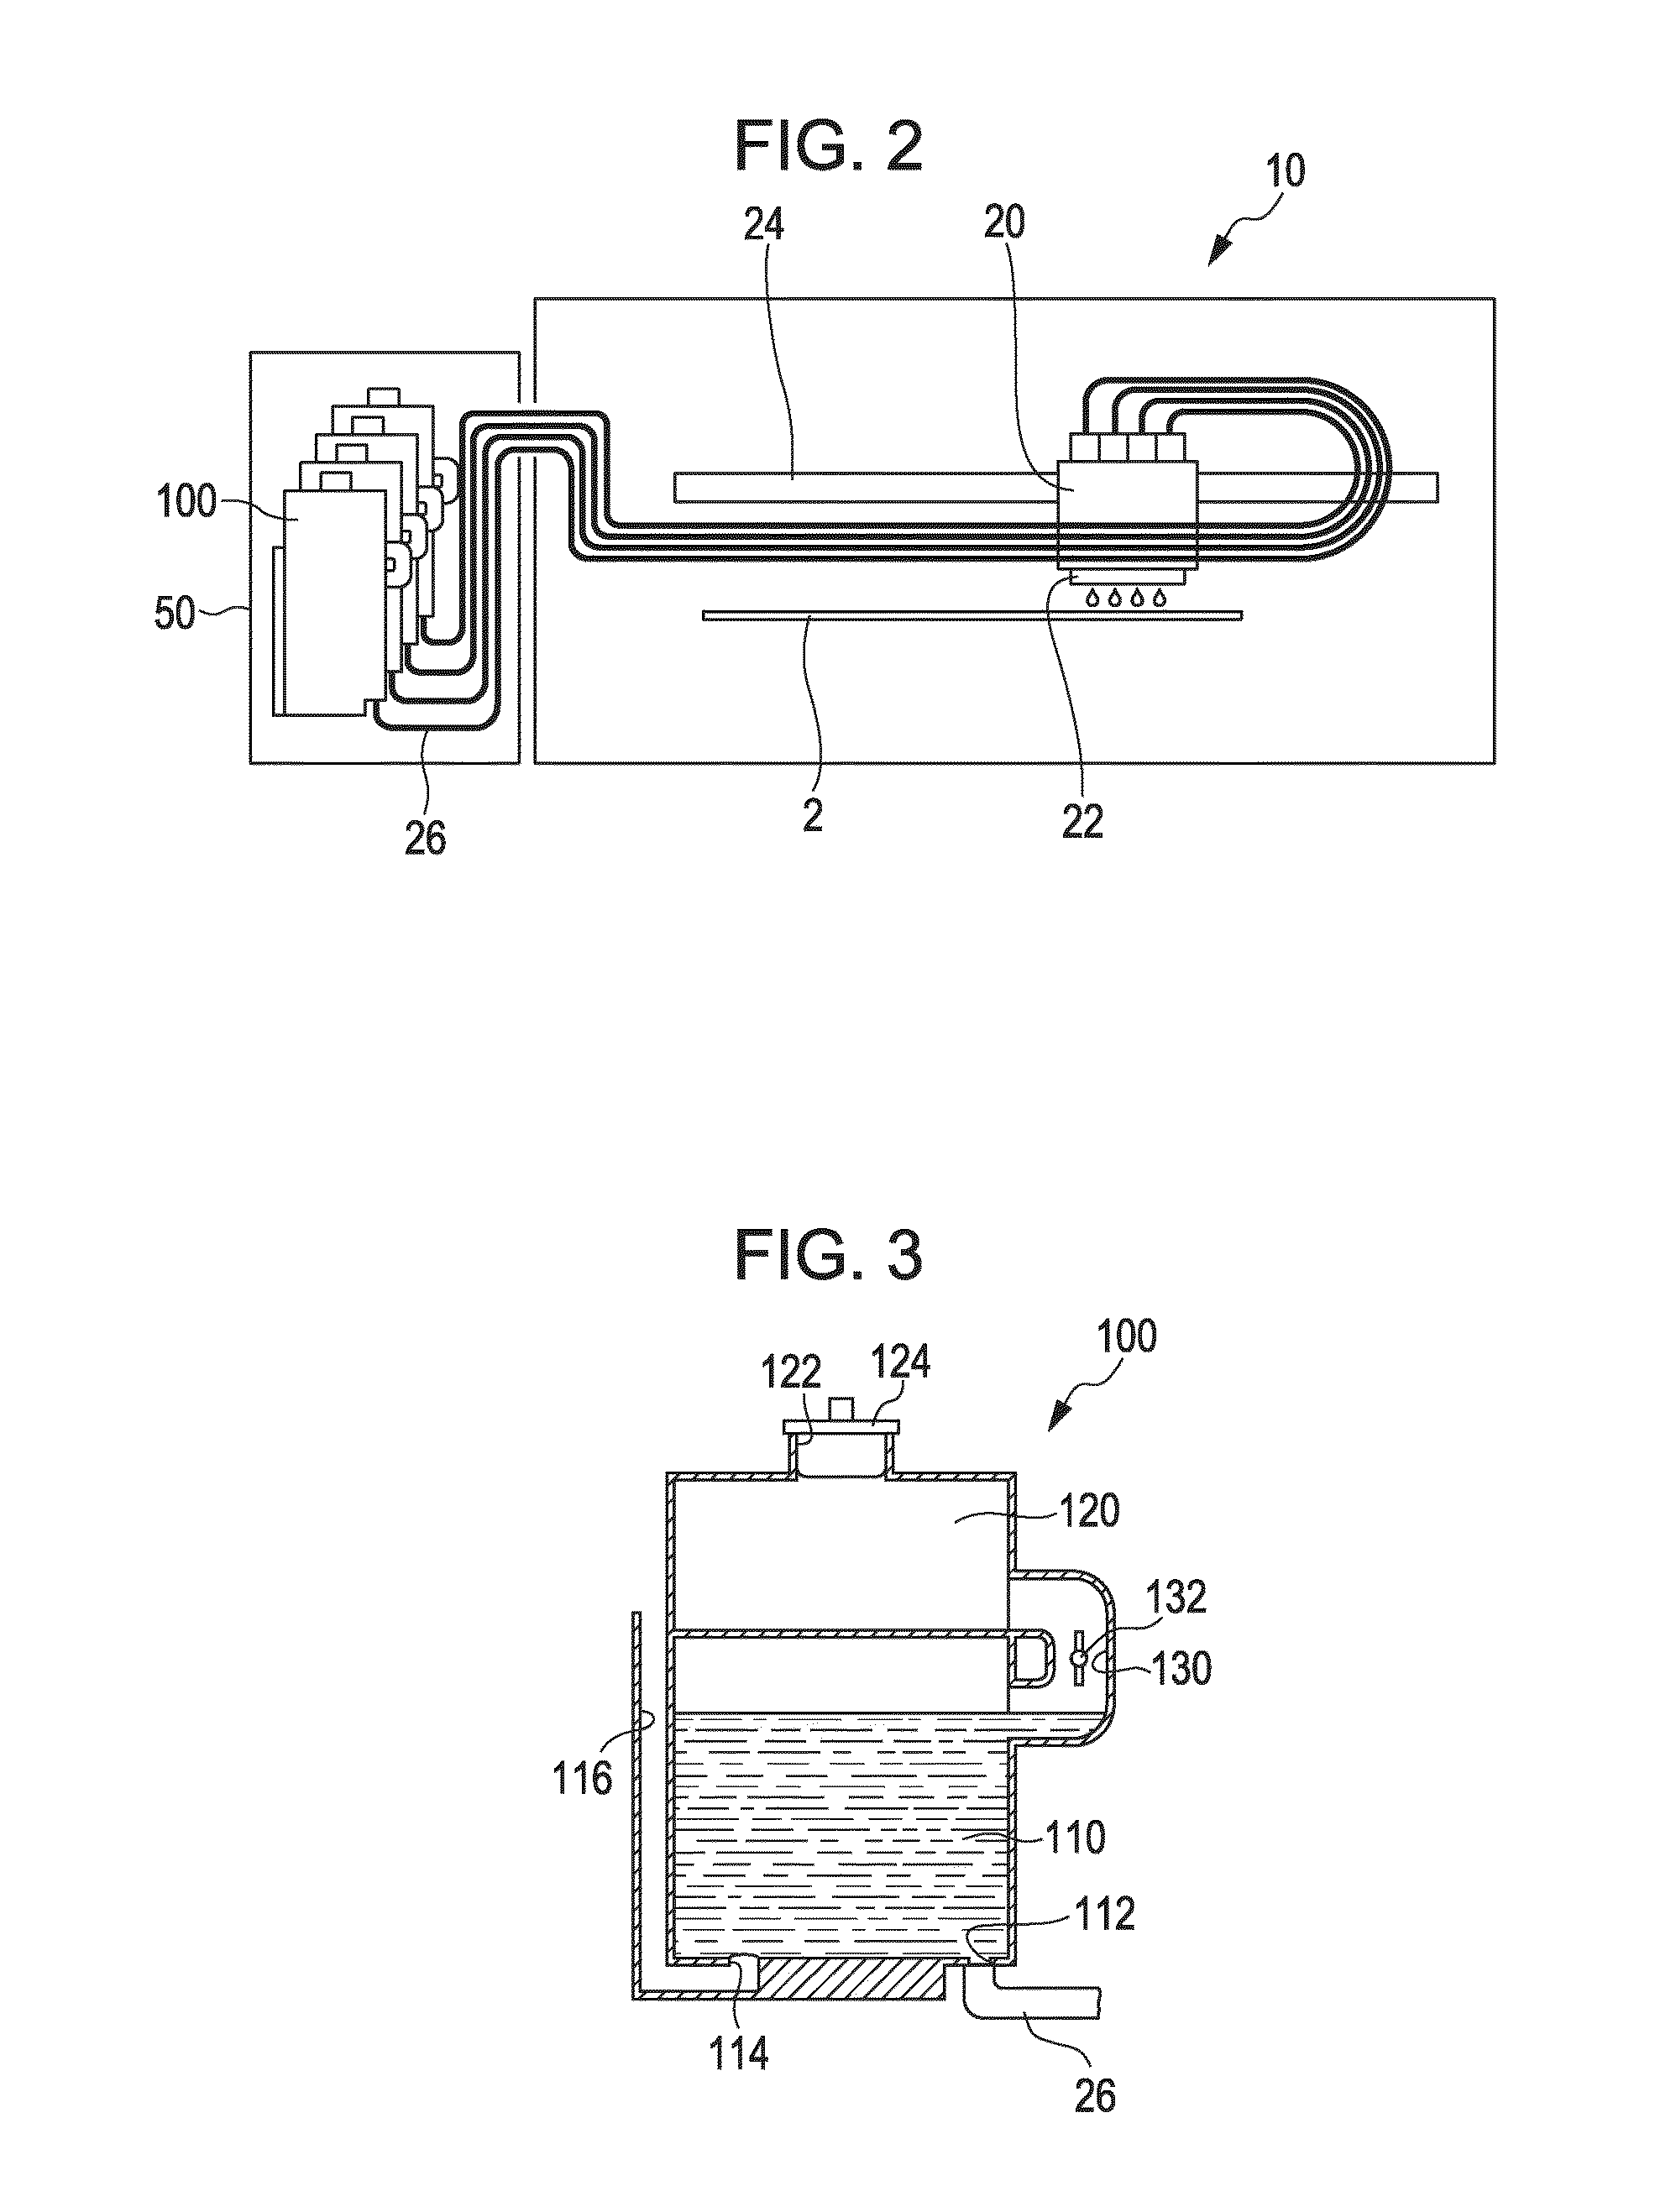 Liquid holding container and liquid consuming apparatus